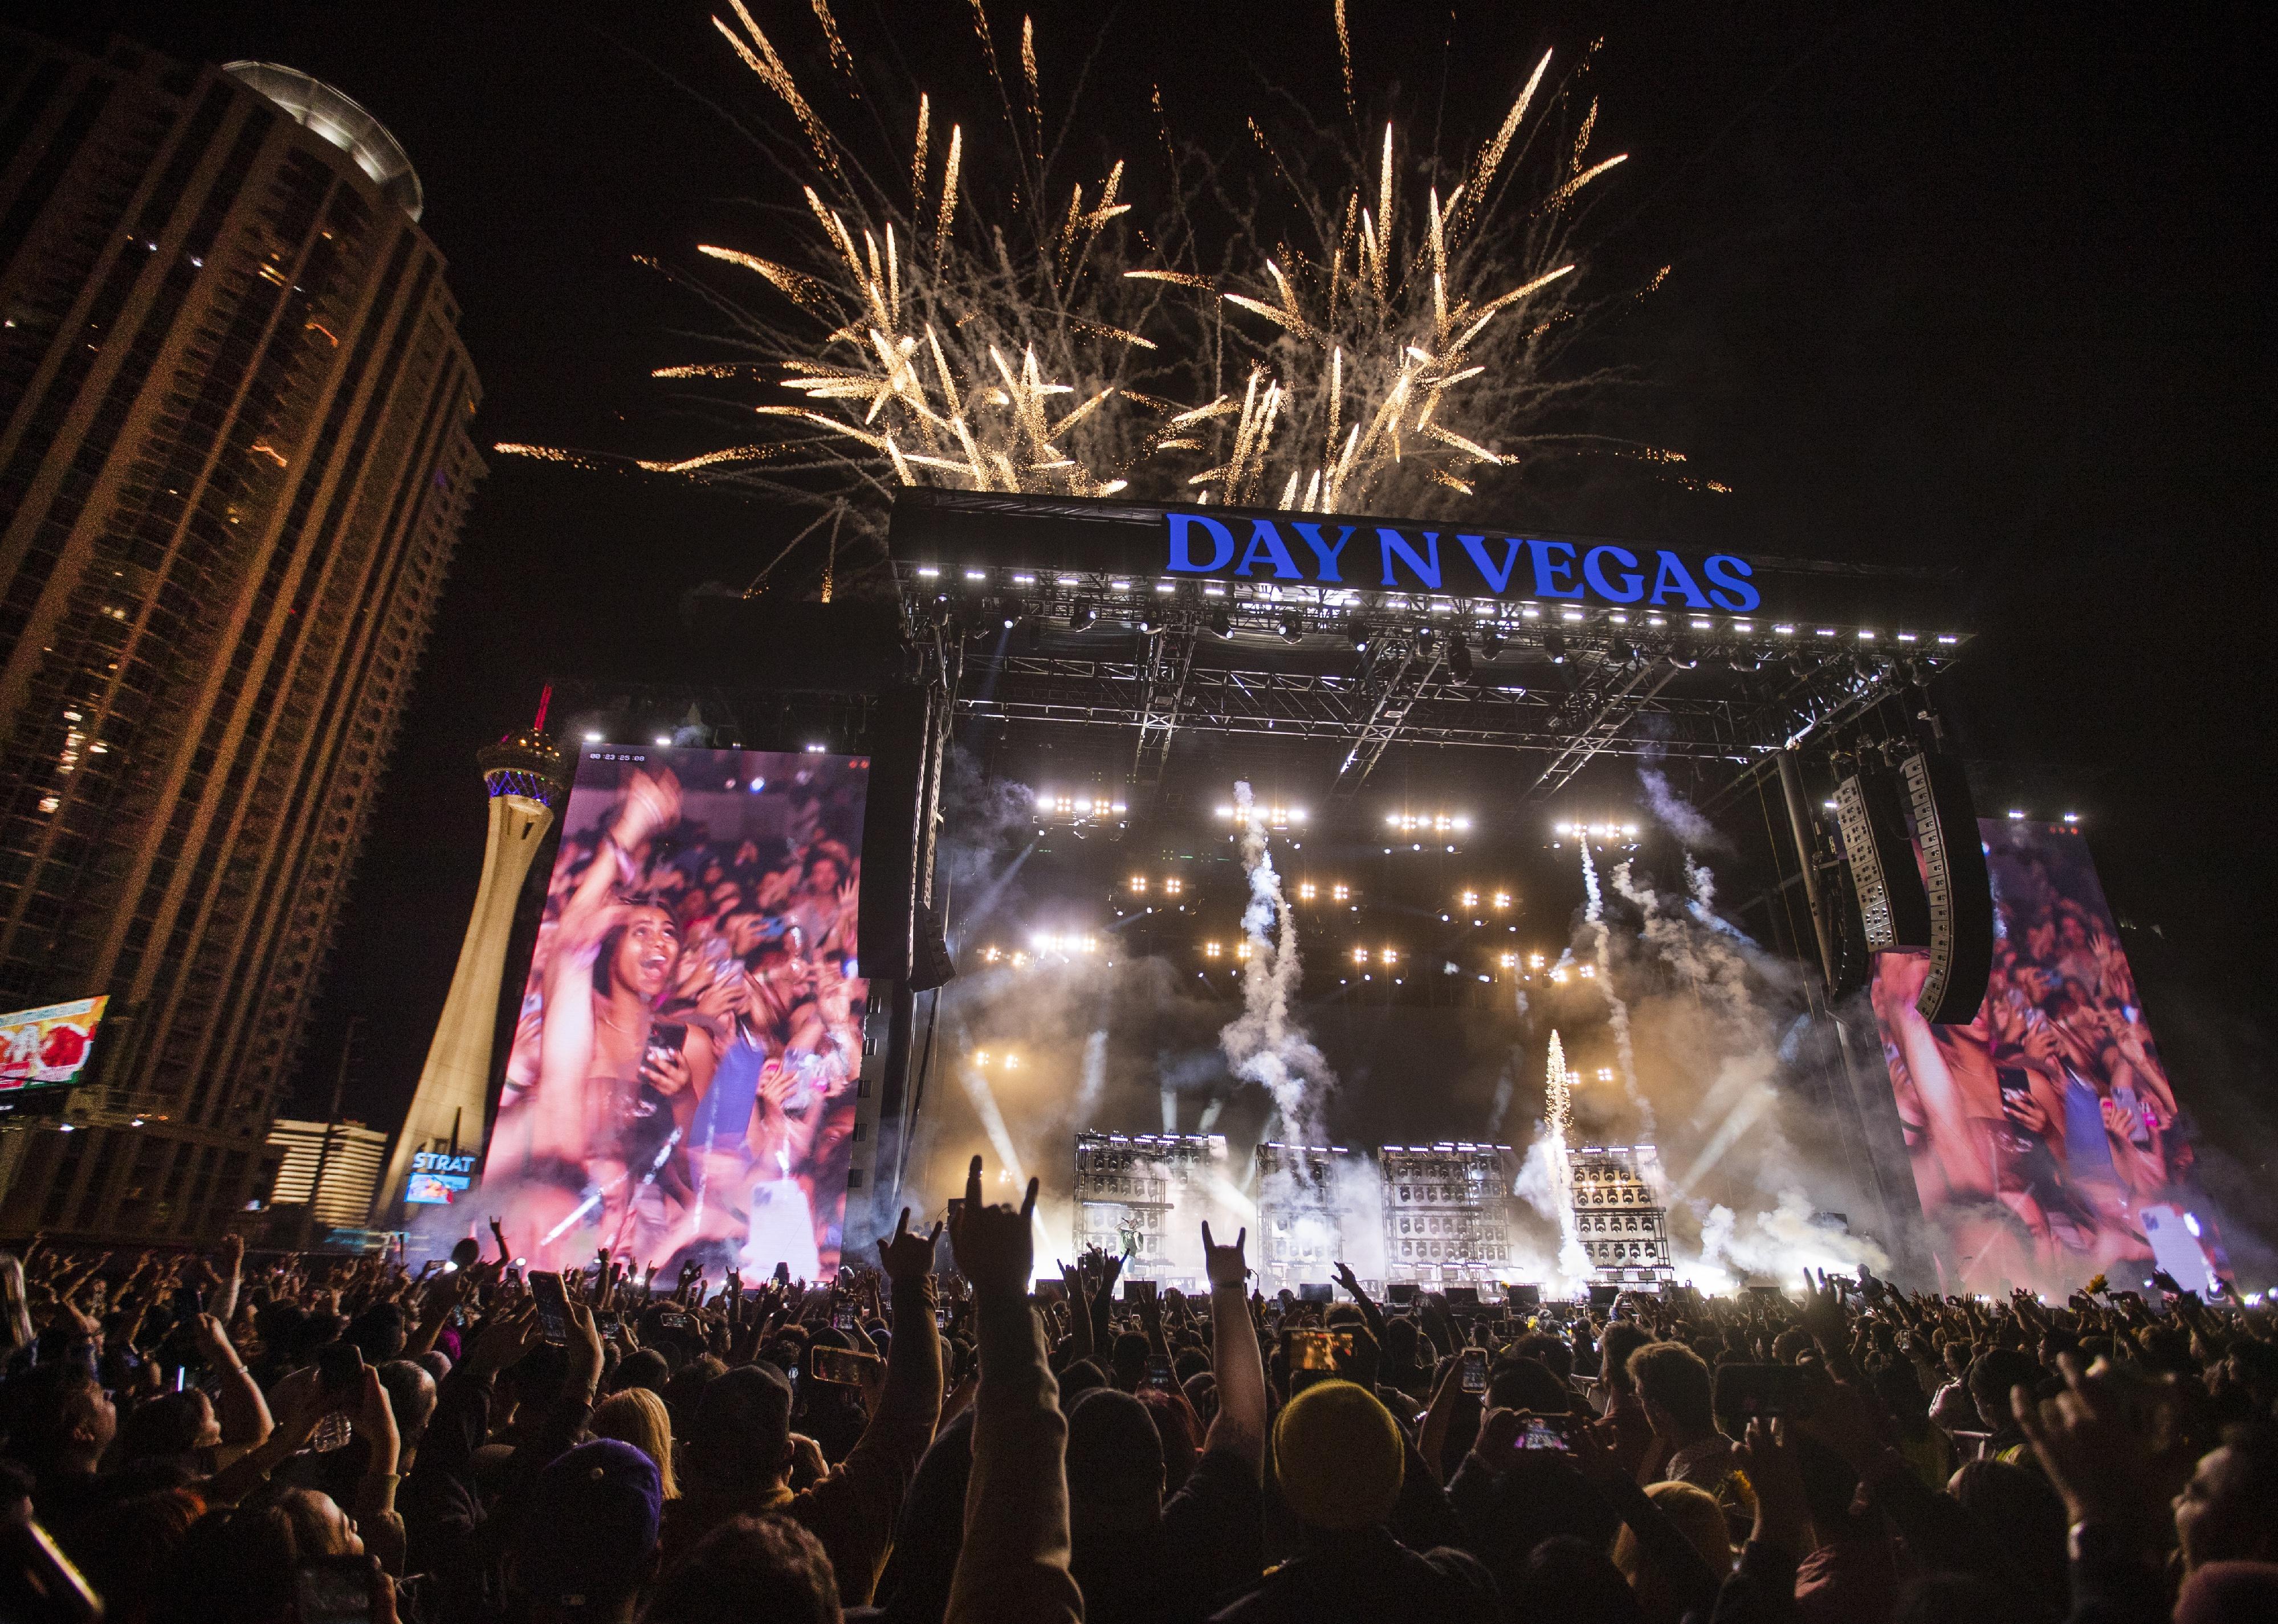 nachrichten Ein Feuerwerk explodiert, als der Headliner Post Malone am Samstagabend während des Day N Vegas Festivals auftritt.